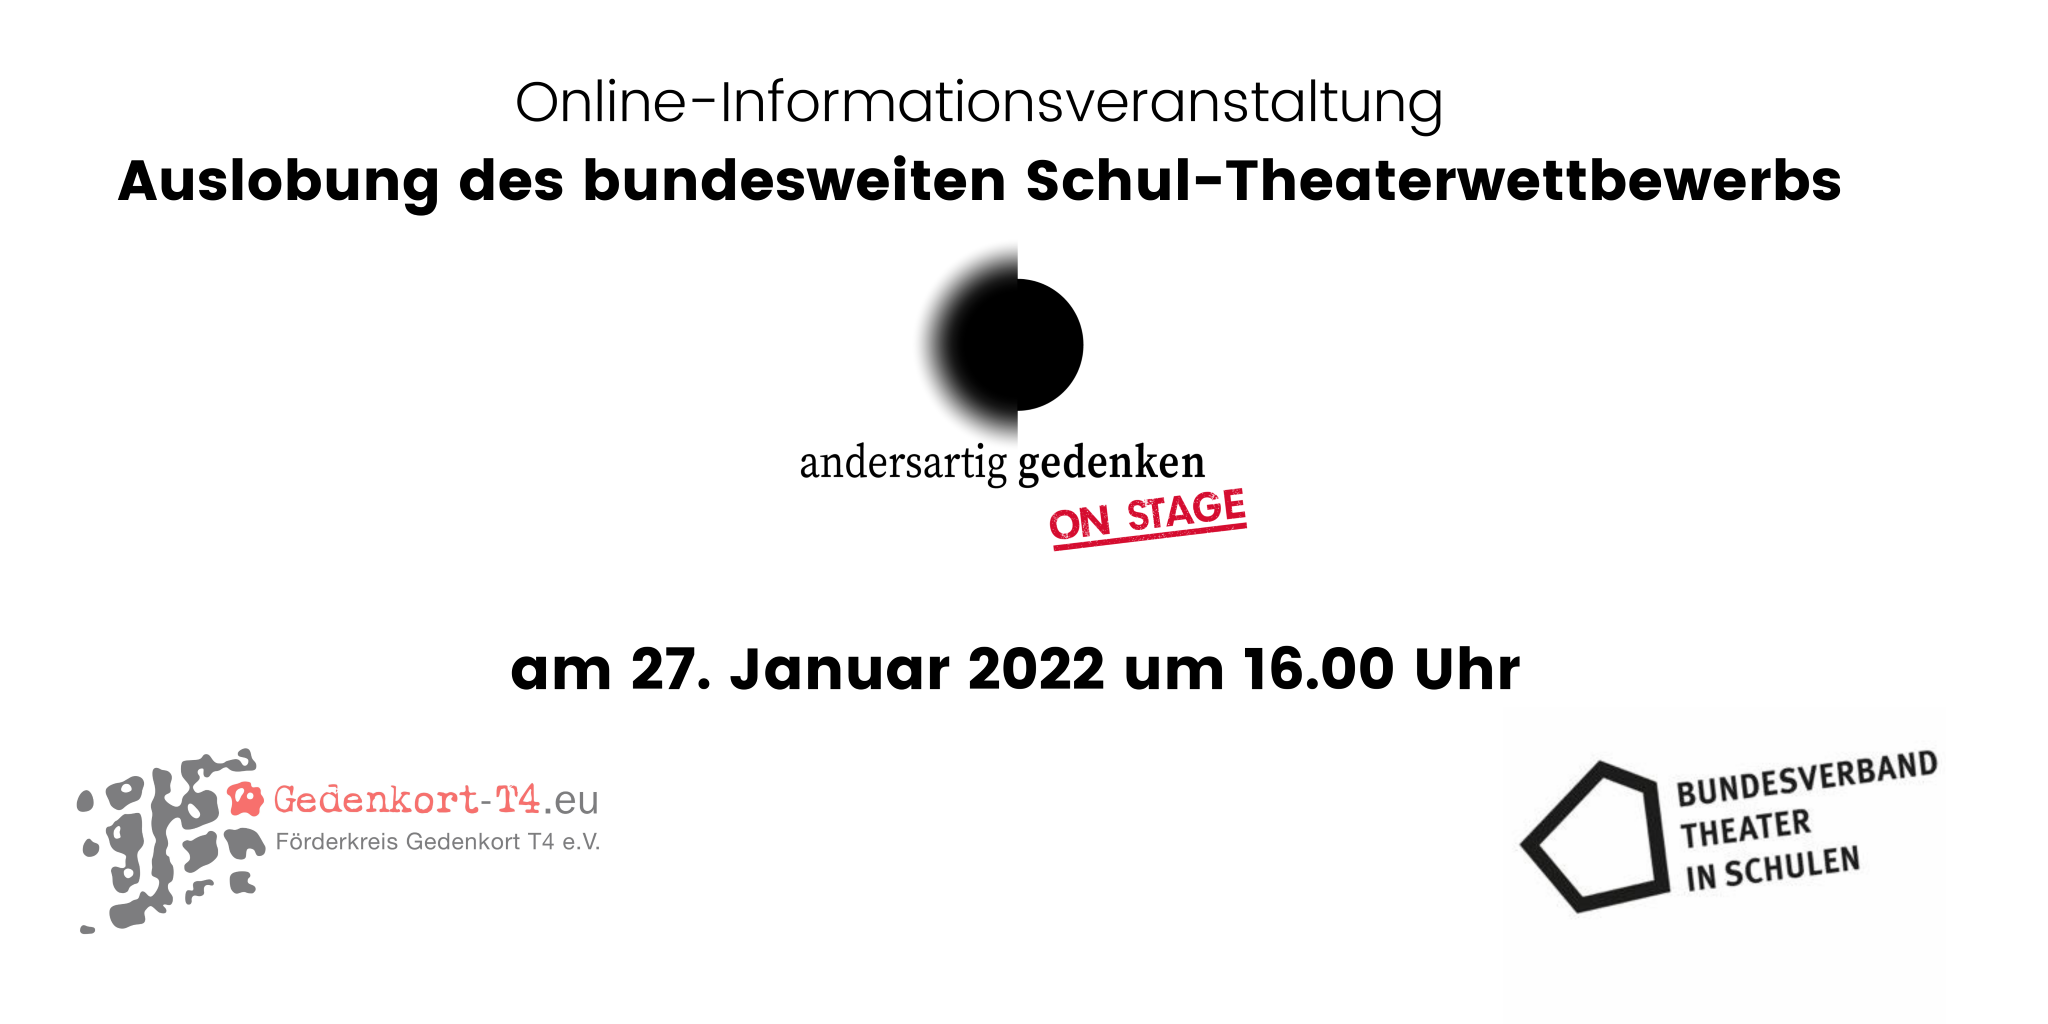 Online-Informationsveranstaltung am 27. Januar 2022 um 16.00 Uhr